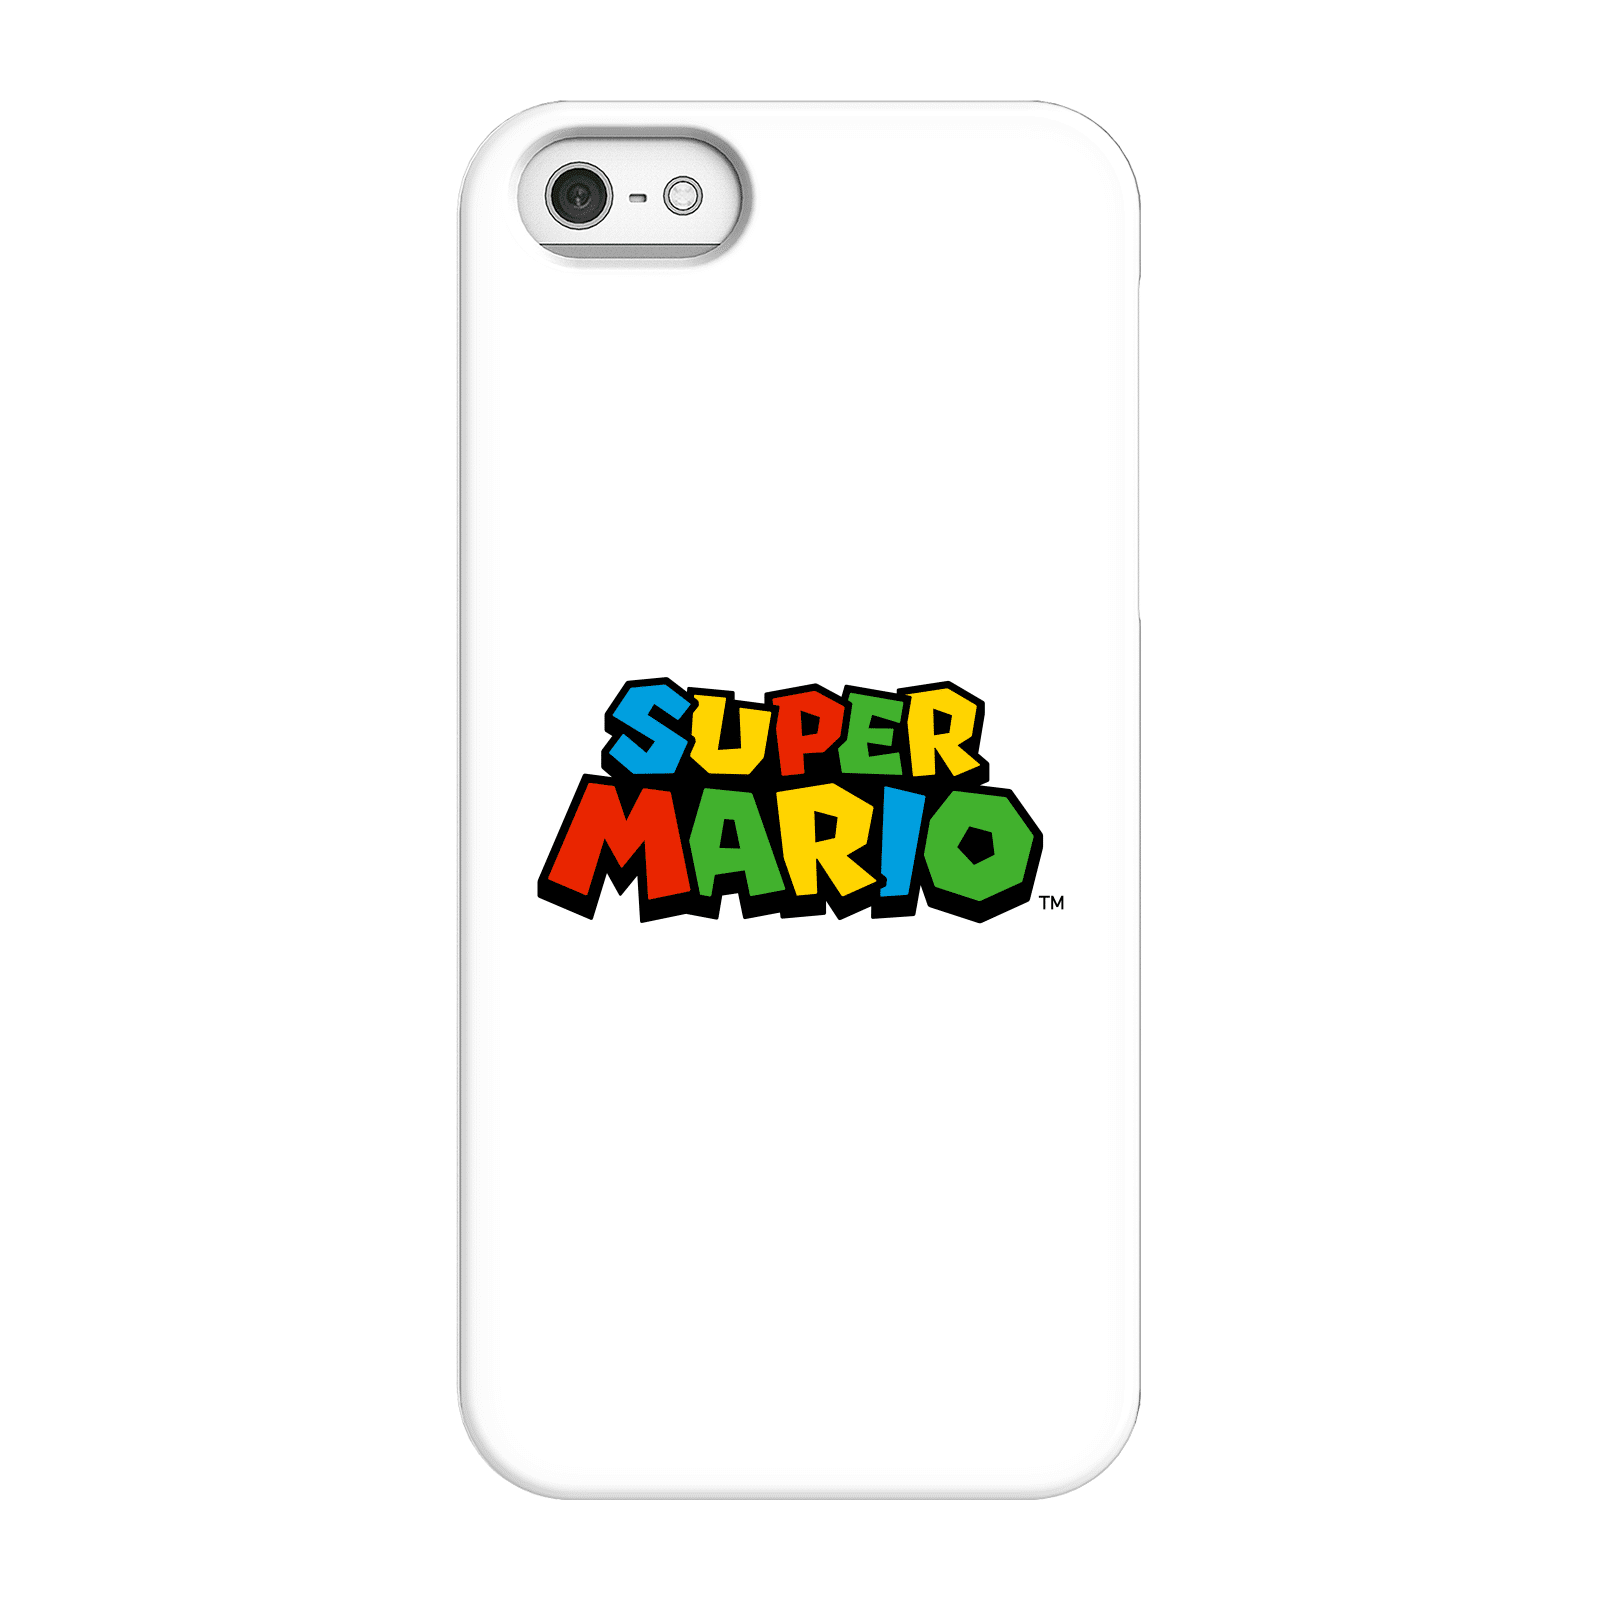 Nintendo Super Mario Colour Logo Phone Case - iPhone 5/5s - Snap Case - Matte